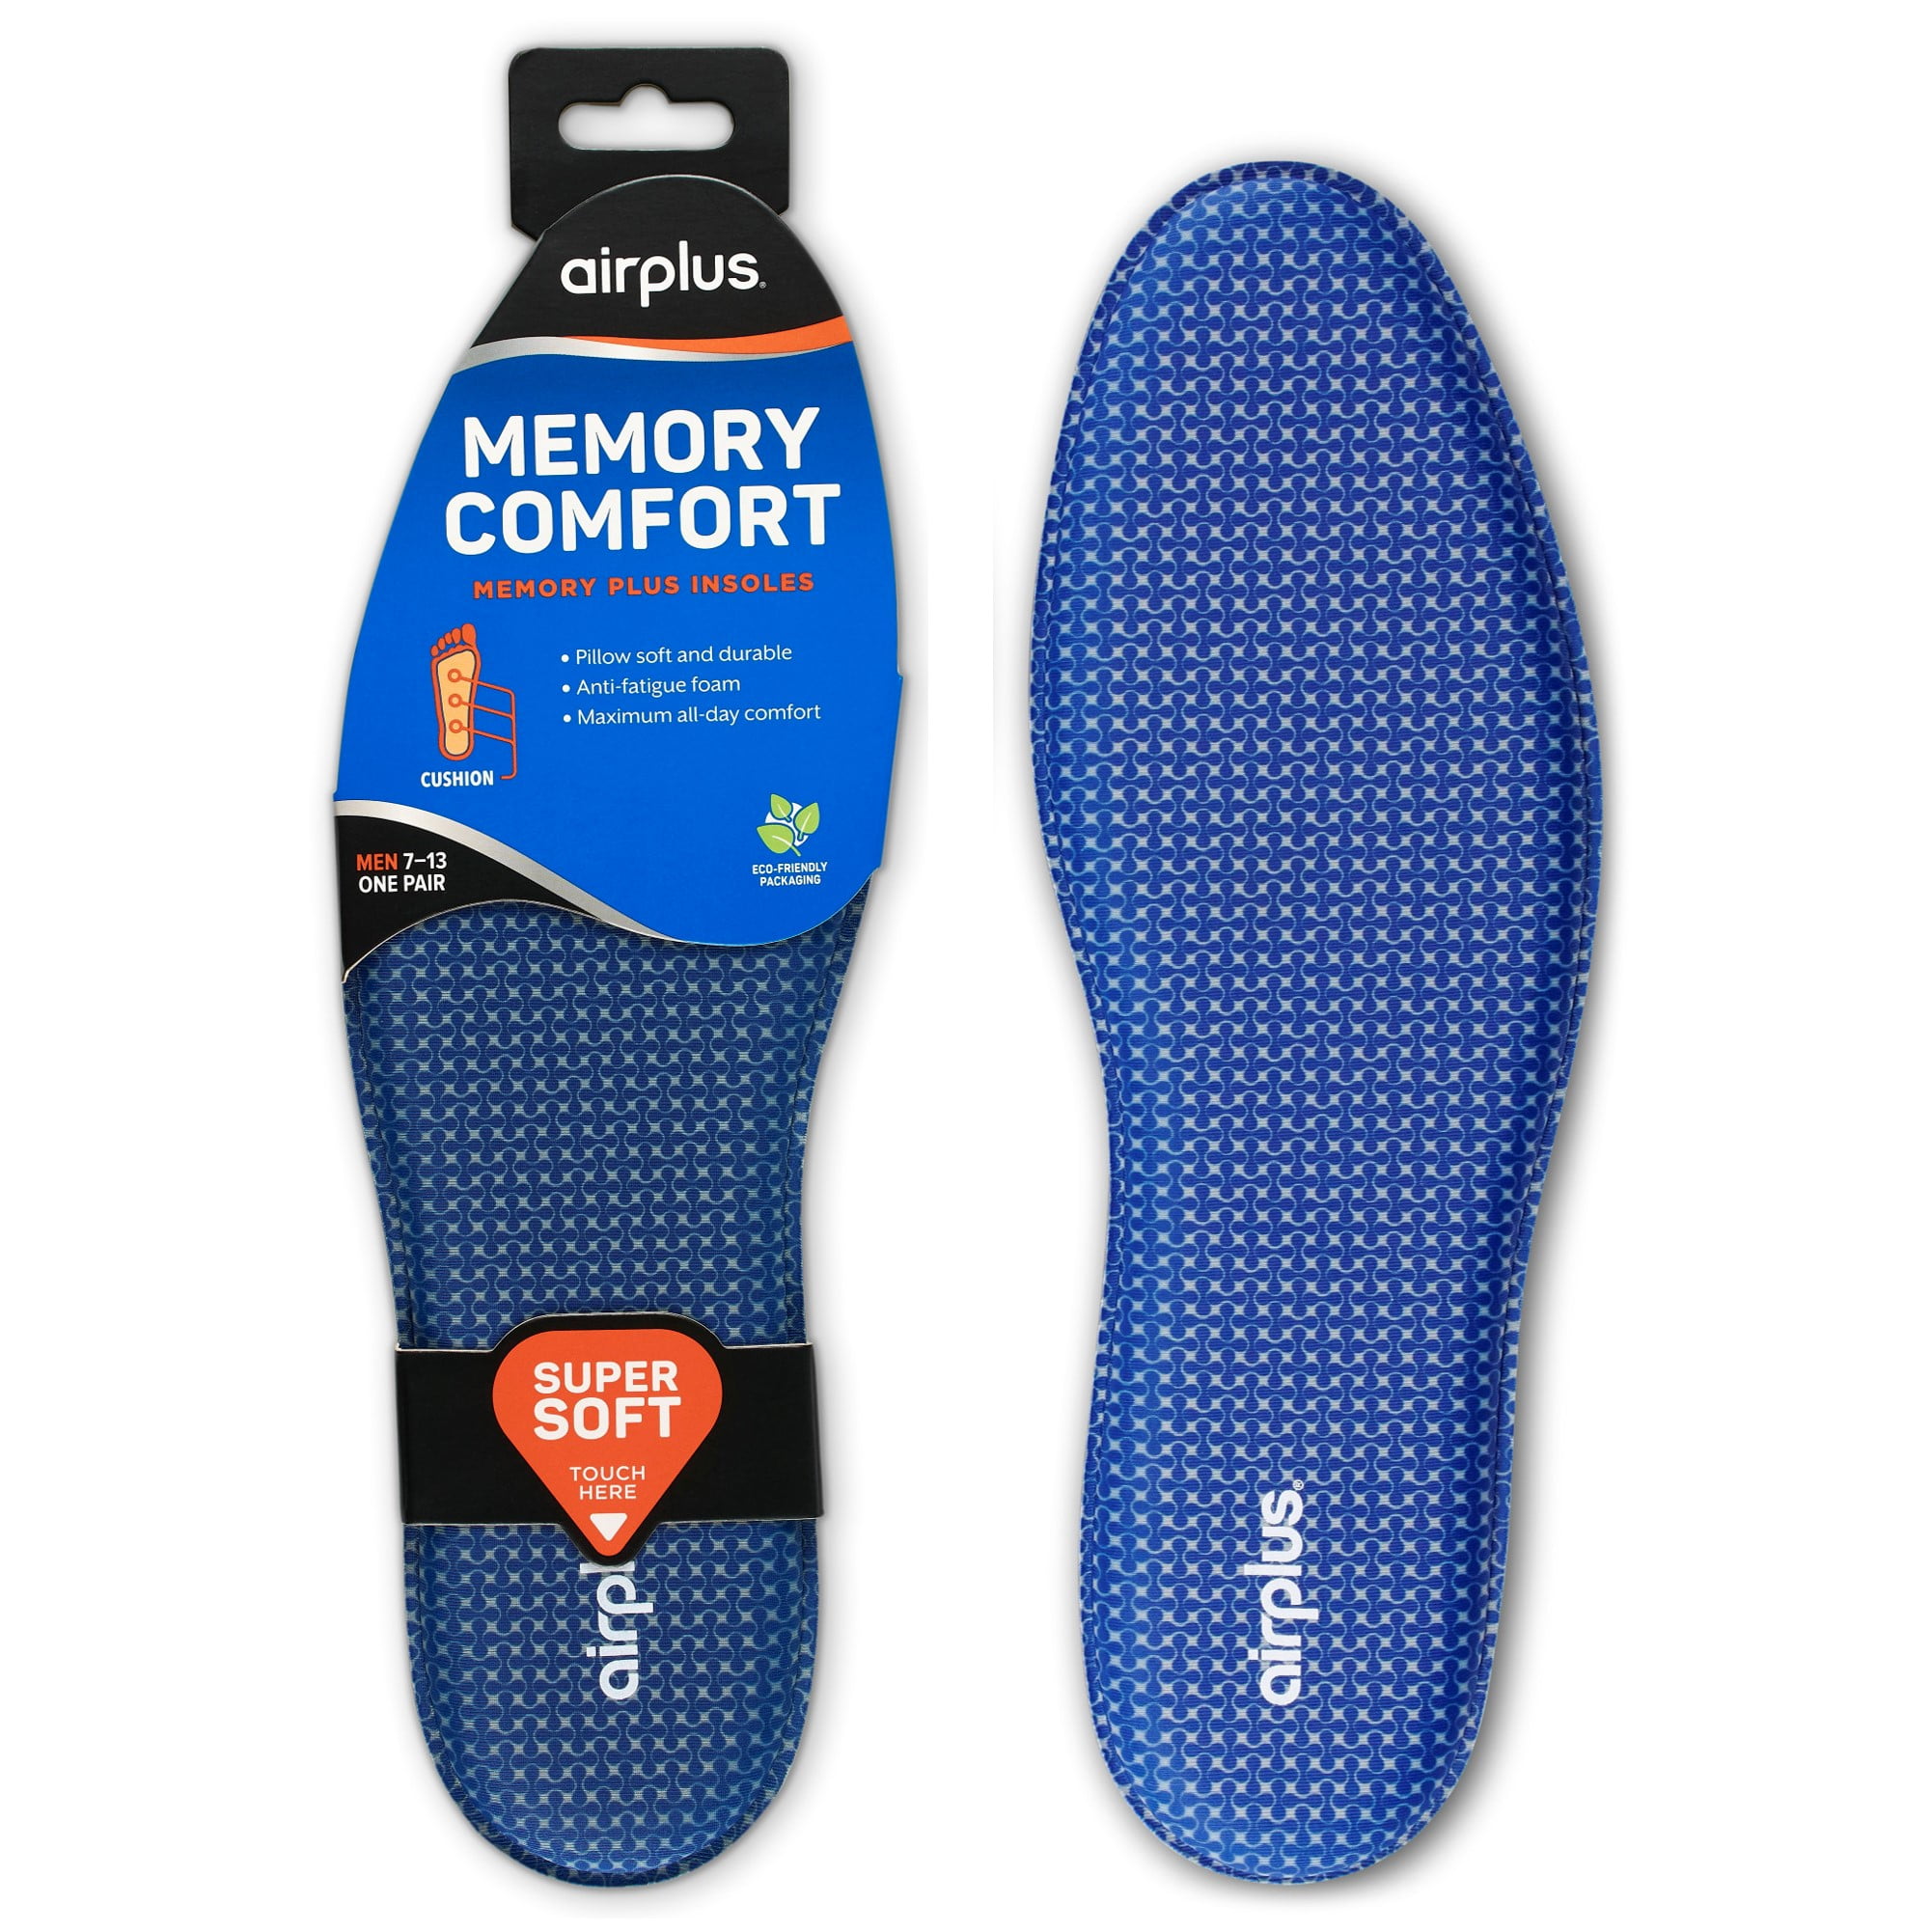 Airplus Memory Foam Comfort Insoles for men s shoes 7 13 3ada32db 09c6 4698 9fab dad39189ab76.f4c2d2b09ae8f23803500caf0d284f47